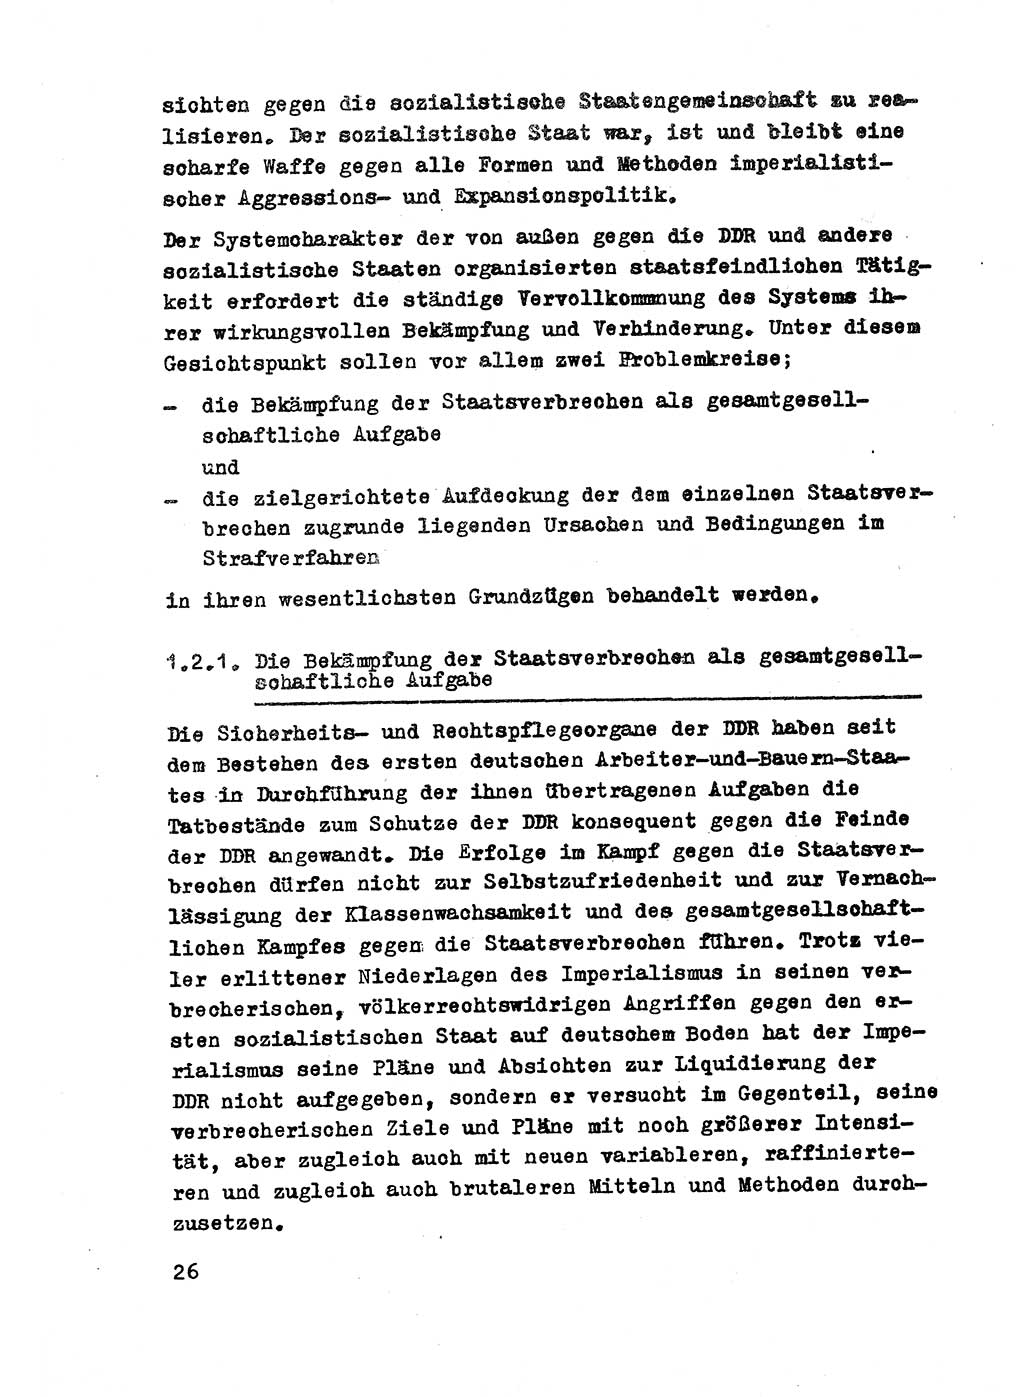 Strafrecht der DDR (Deutsche Demokratische Republik), Besonderer Teil, Lehrmaterial, Heft 2 1969, Seite 26 (Strafr. DDR BT Lehrmat. H. 2 1969, S. 26)